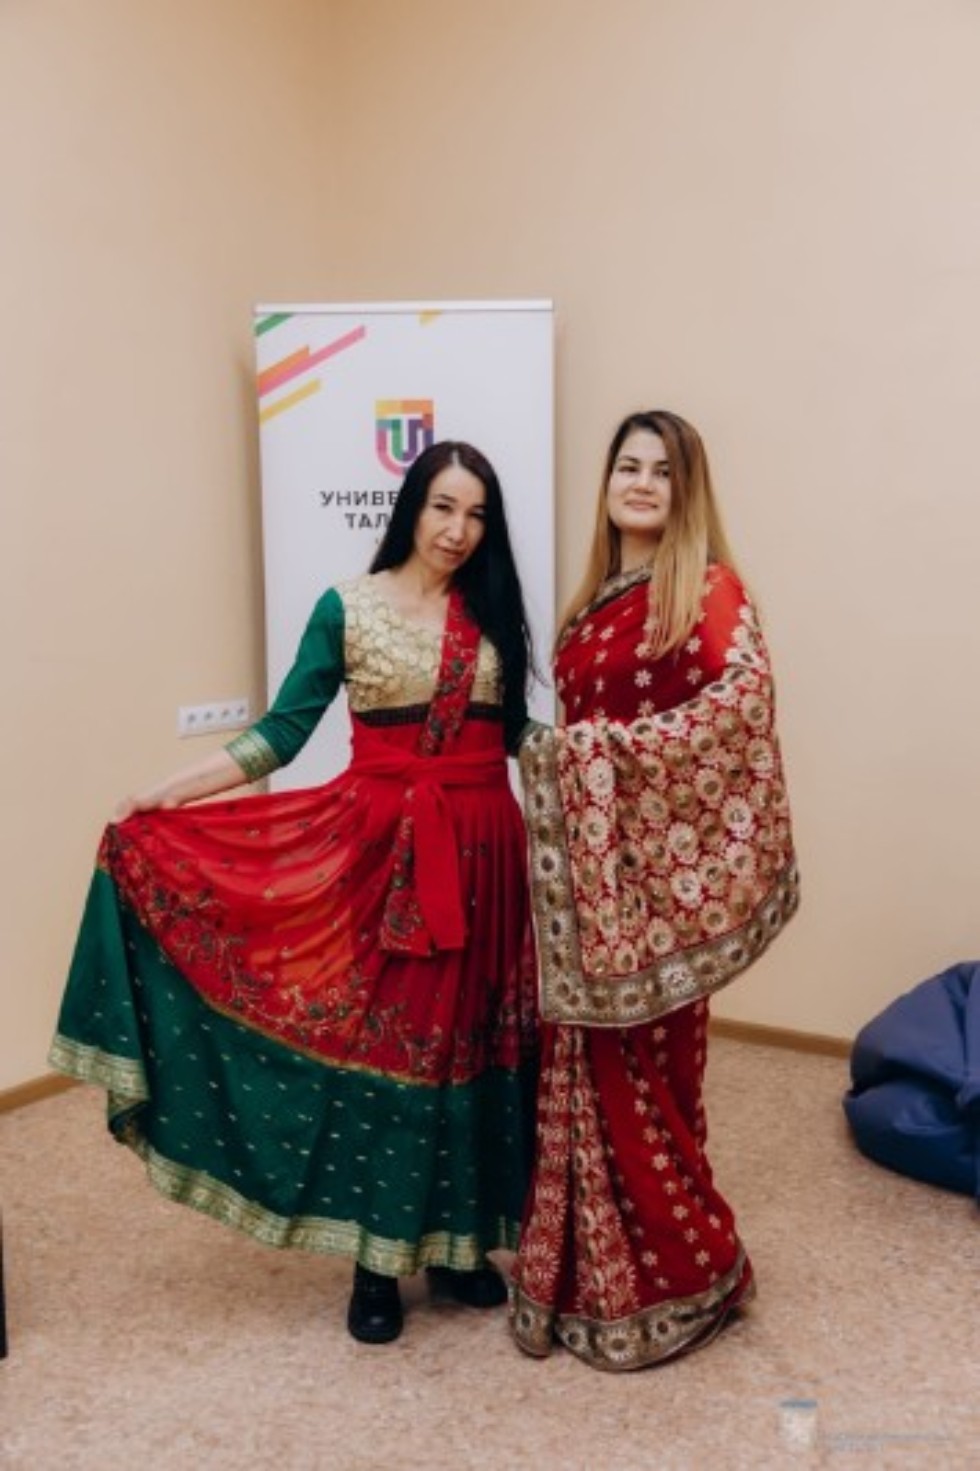 'Индийская вышивка и костюм' ,Индийская вышивка, интерактивное занятие